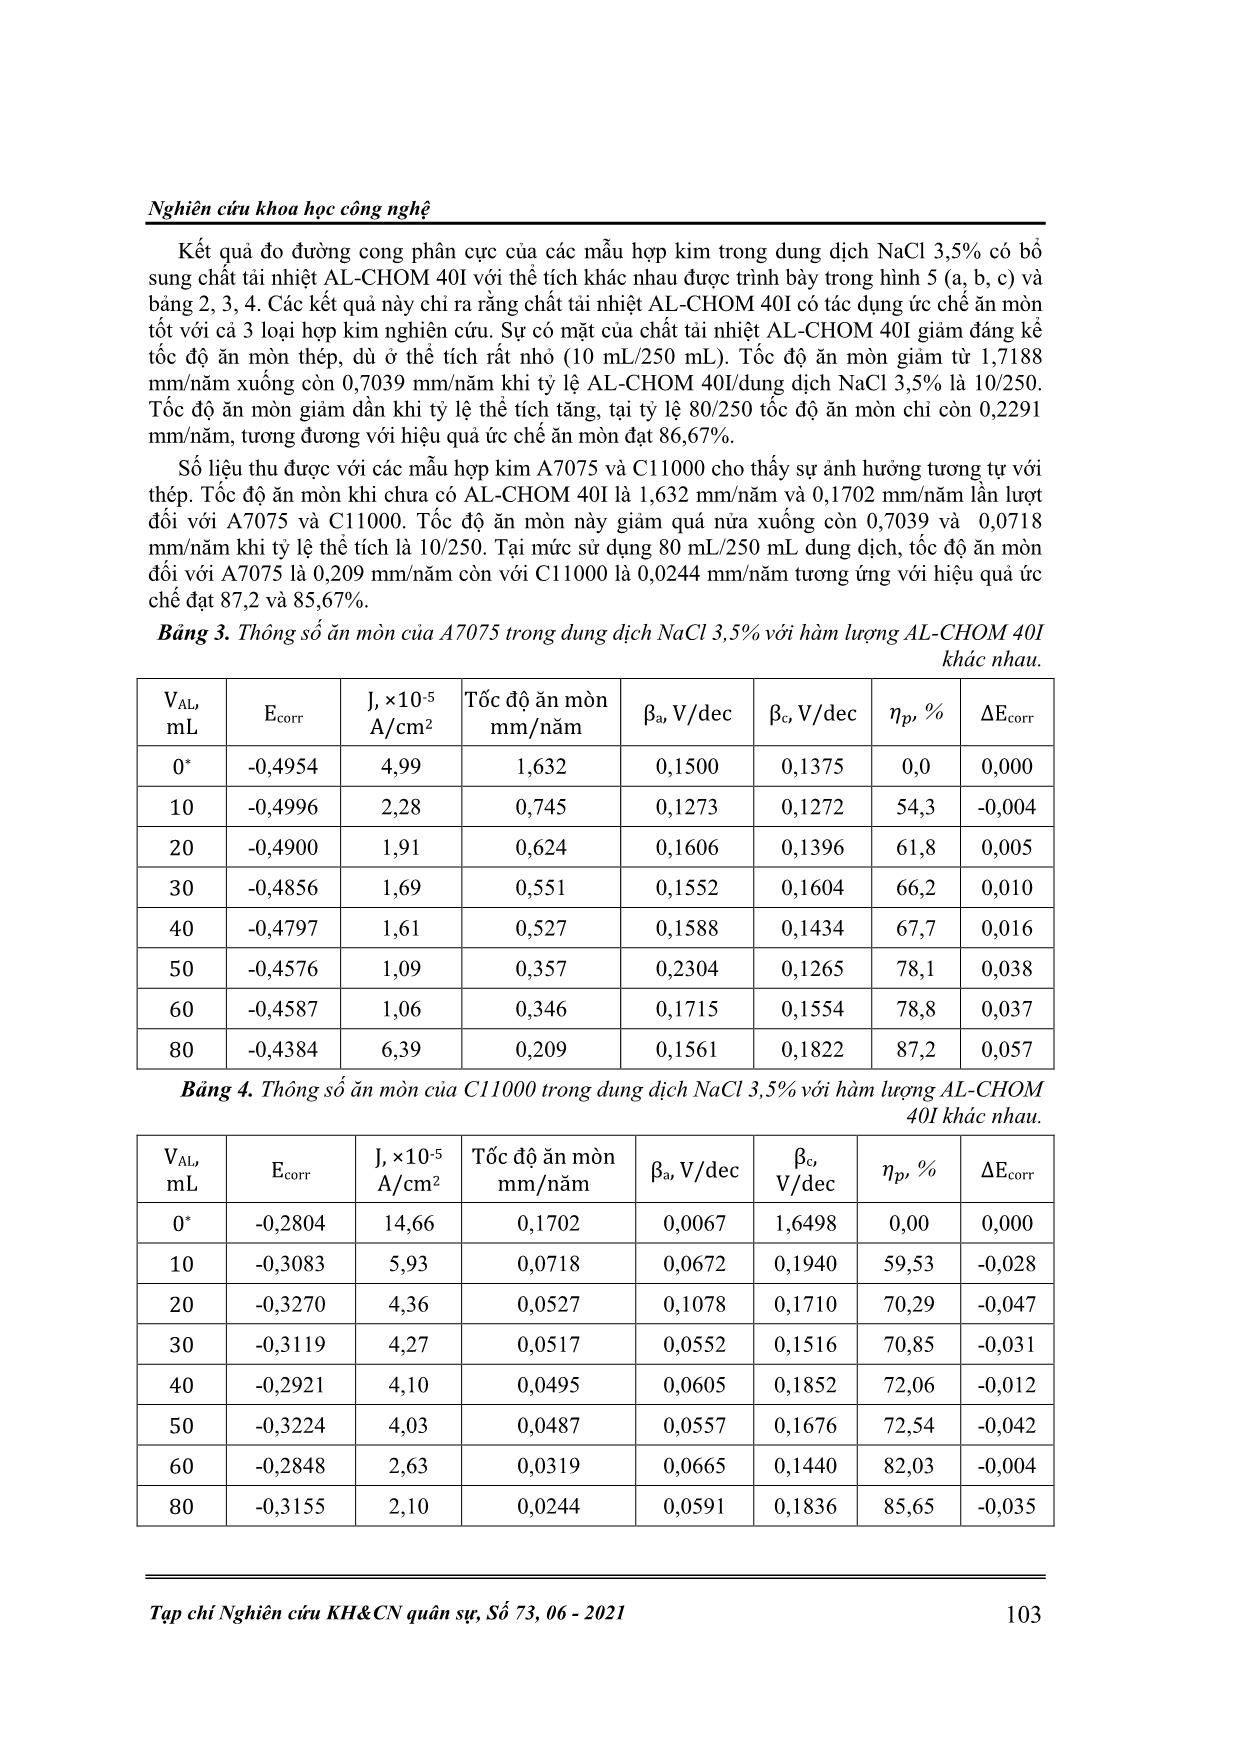 Nghiên cứu đặc tính chống ăn mòn của chất tải nhiệt AL-CHOM 40I trên một số hợp kim trang 4